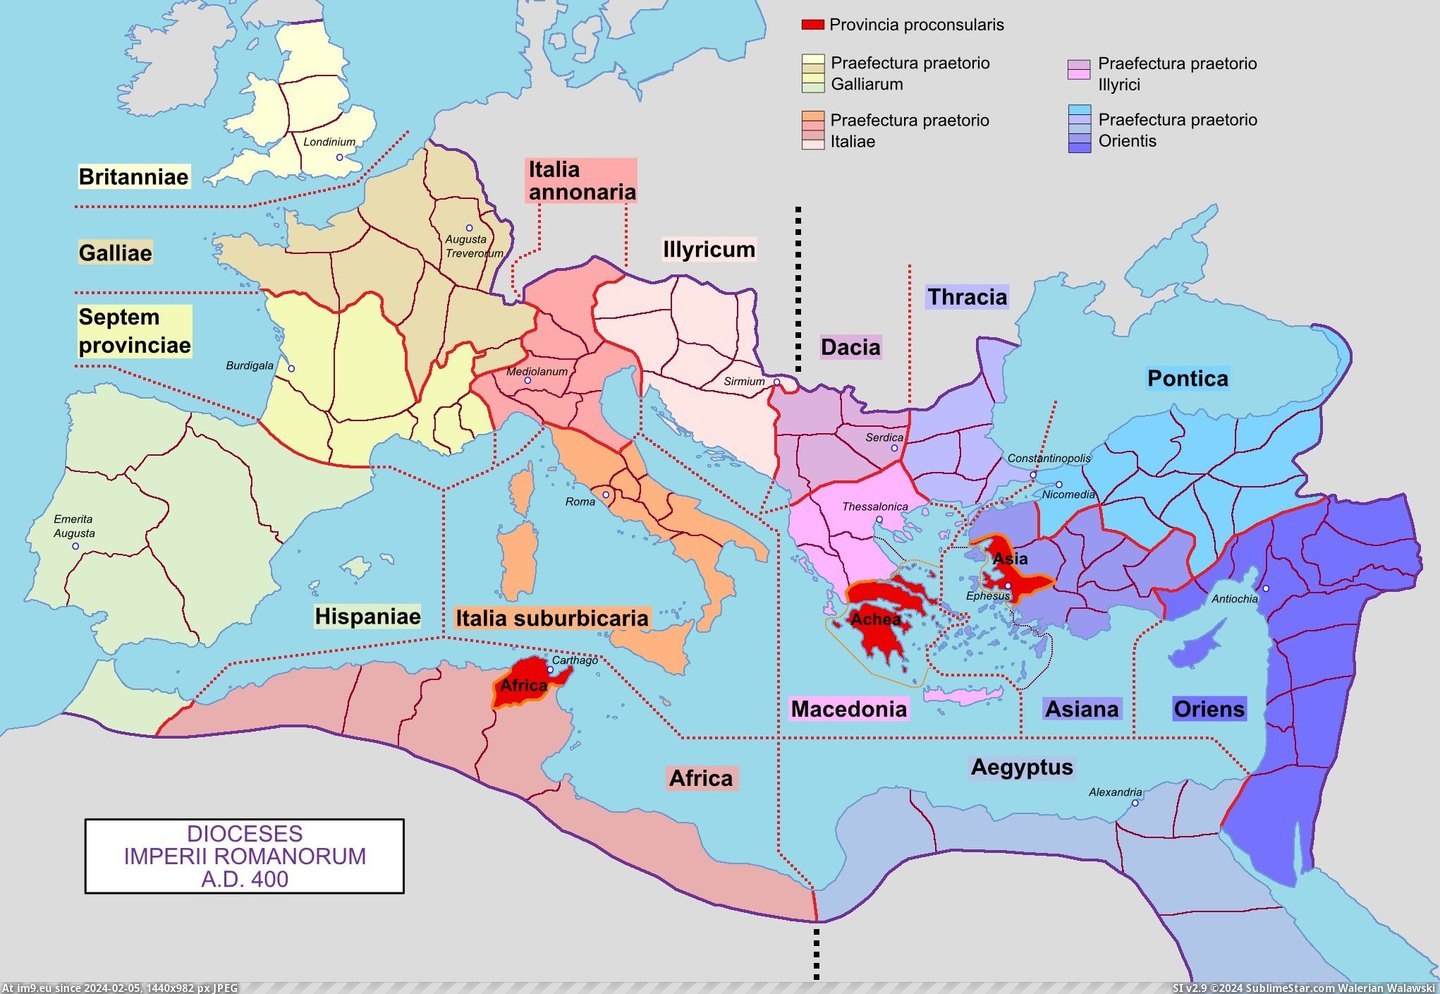 #Empire  #Roman [Mapporn] Dioceses of the Roman Empire in 400 AD [2042x1404] Pic. (Bild von album My r/MAPS favs))